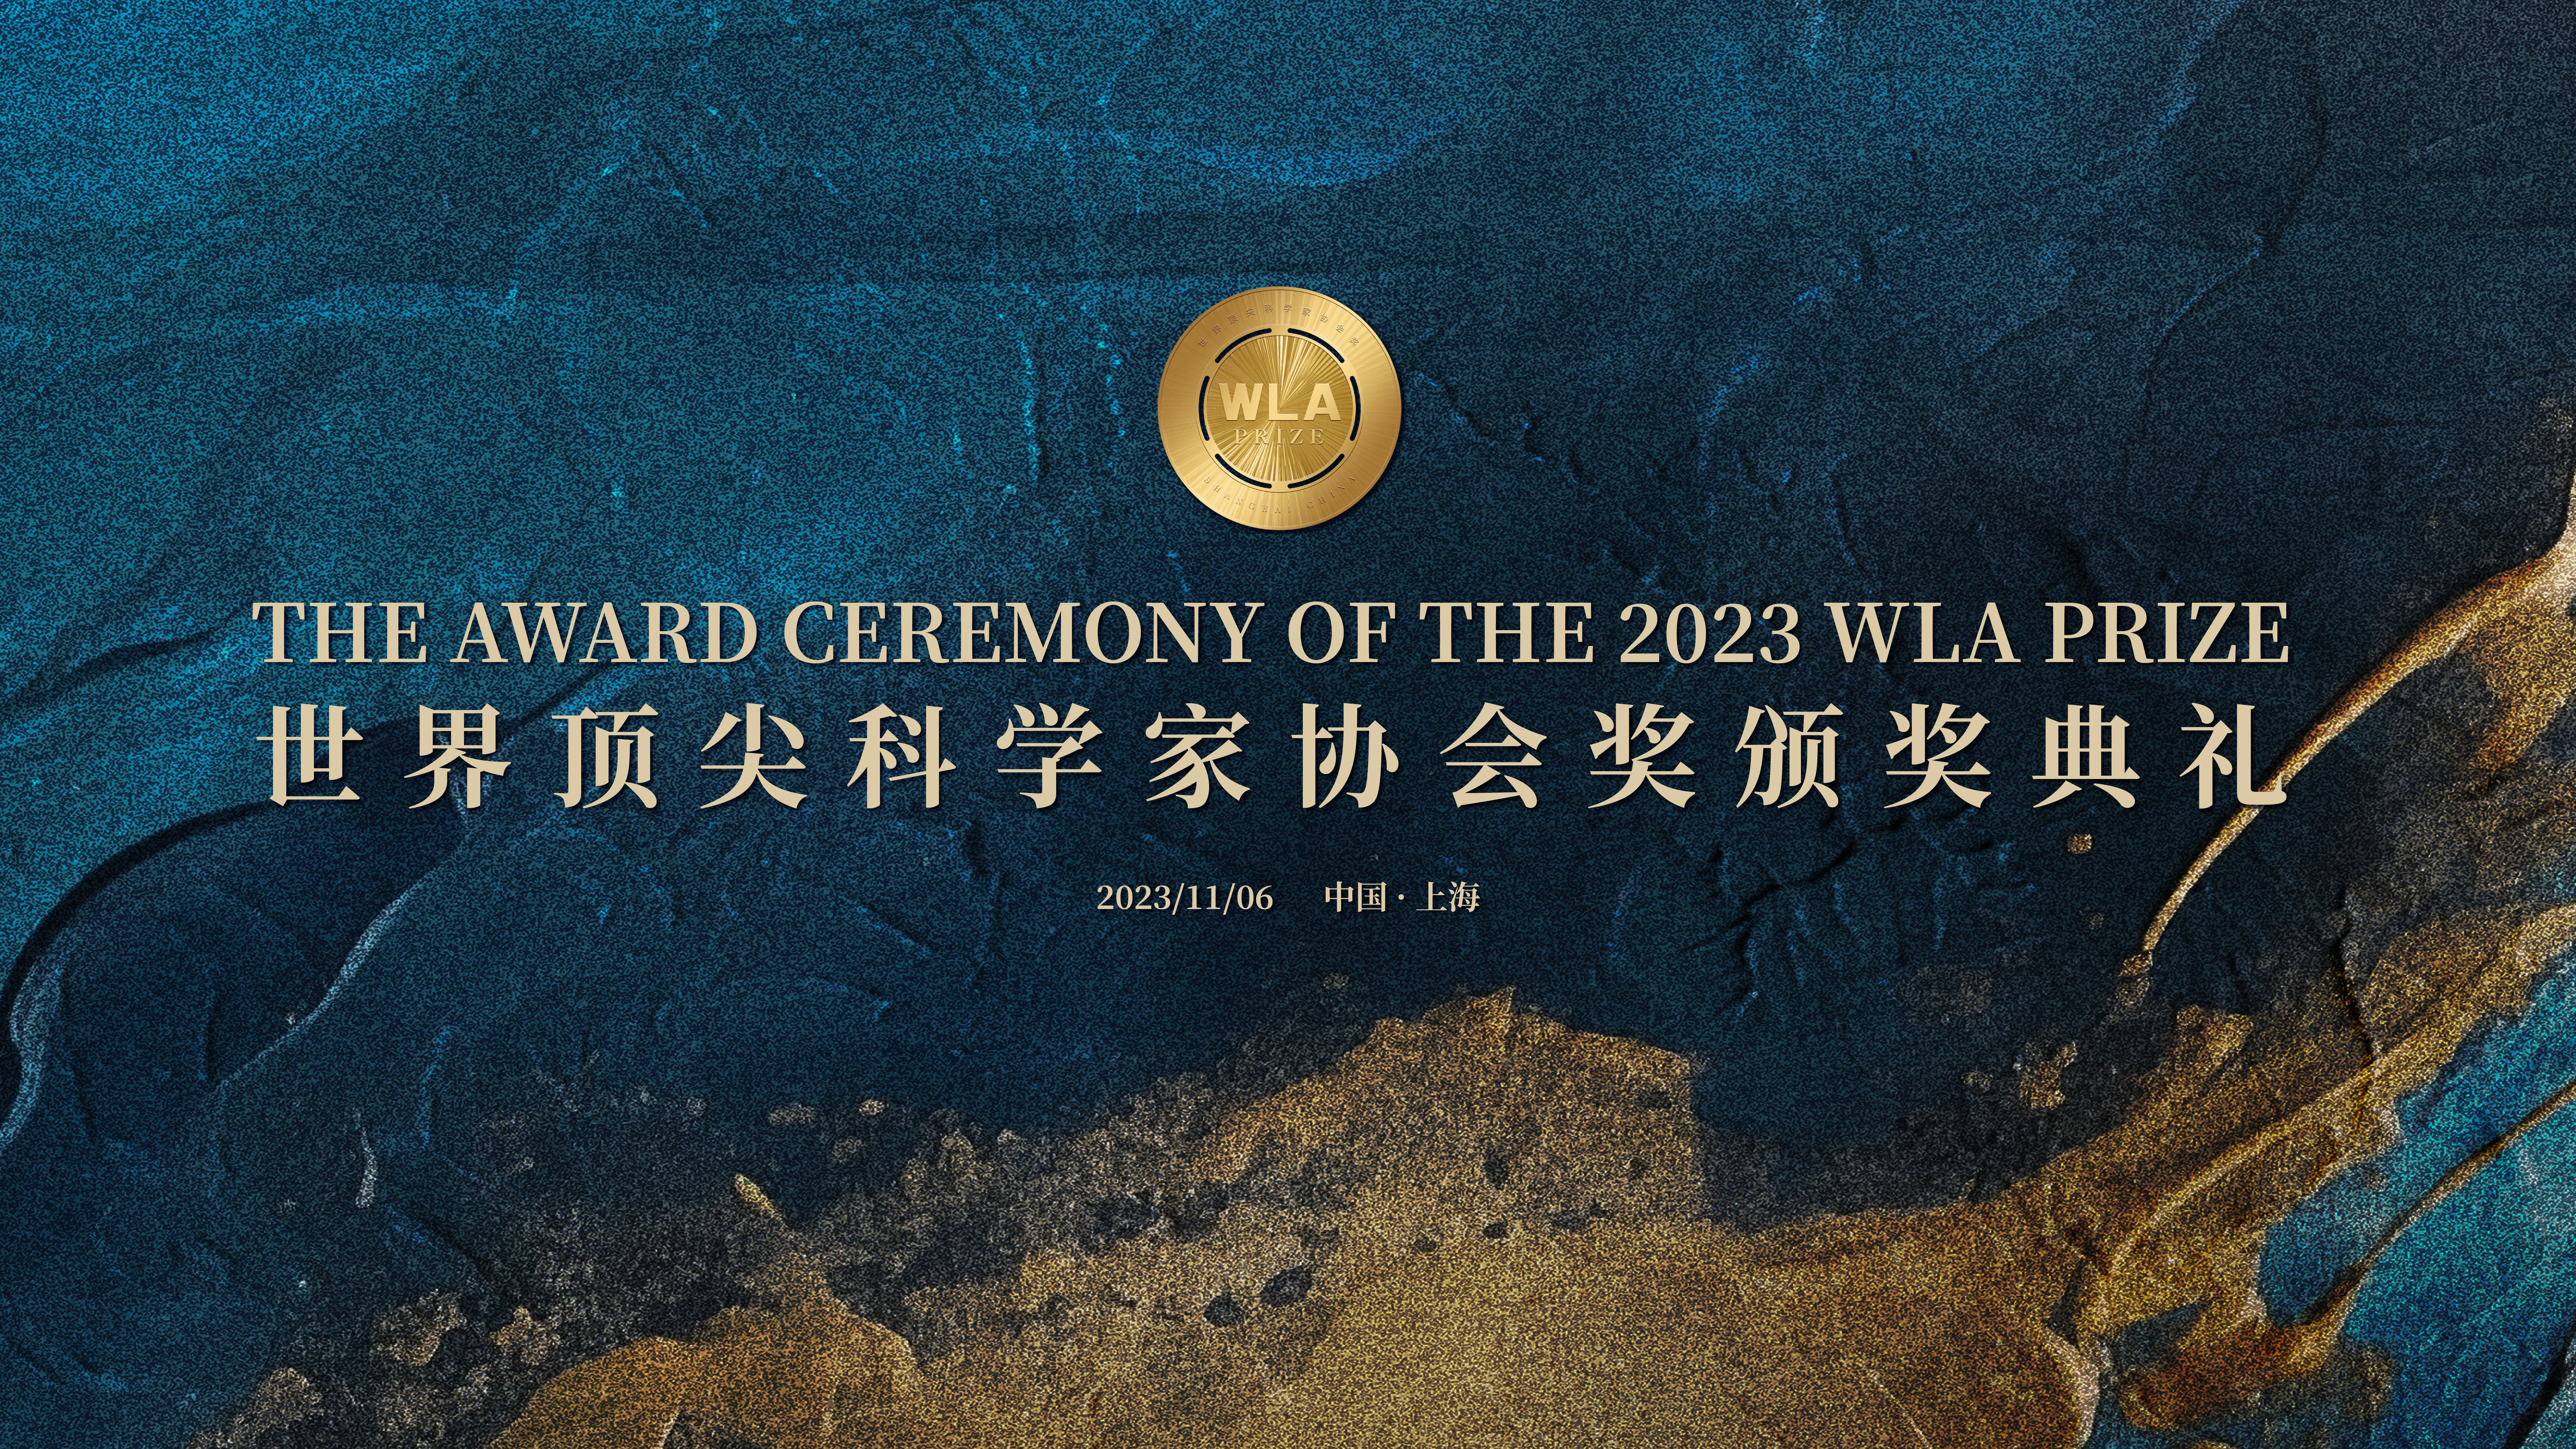 2023年世界顶尖科学家协会奖颁奖典礼将于11月6日在沪举行